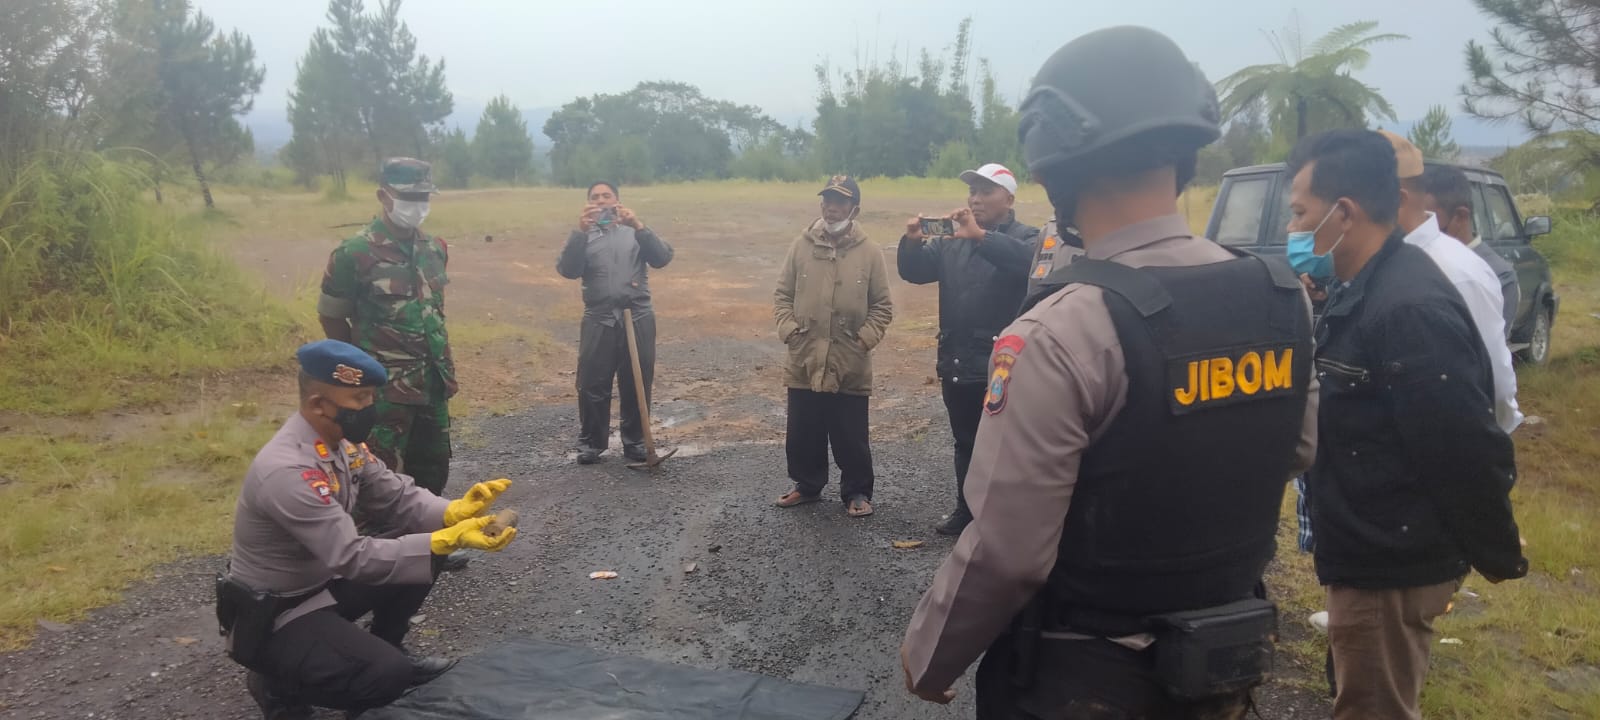 Bom Militer Tipe Proyektil Ditemukan Warga di Berastagi, Tim Jibom Gegana Brimob Polda Sumut Lakukan Disposal